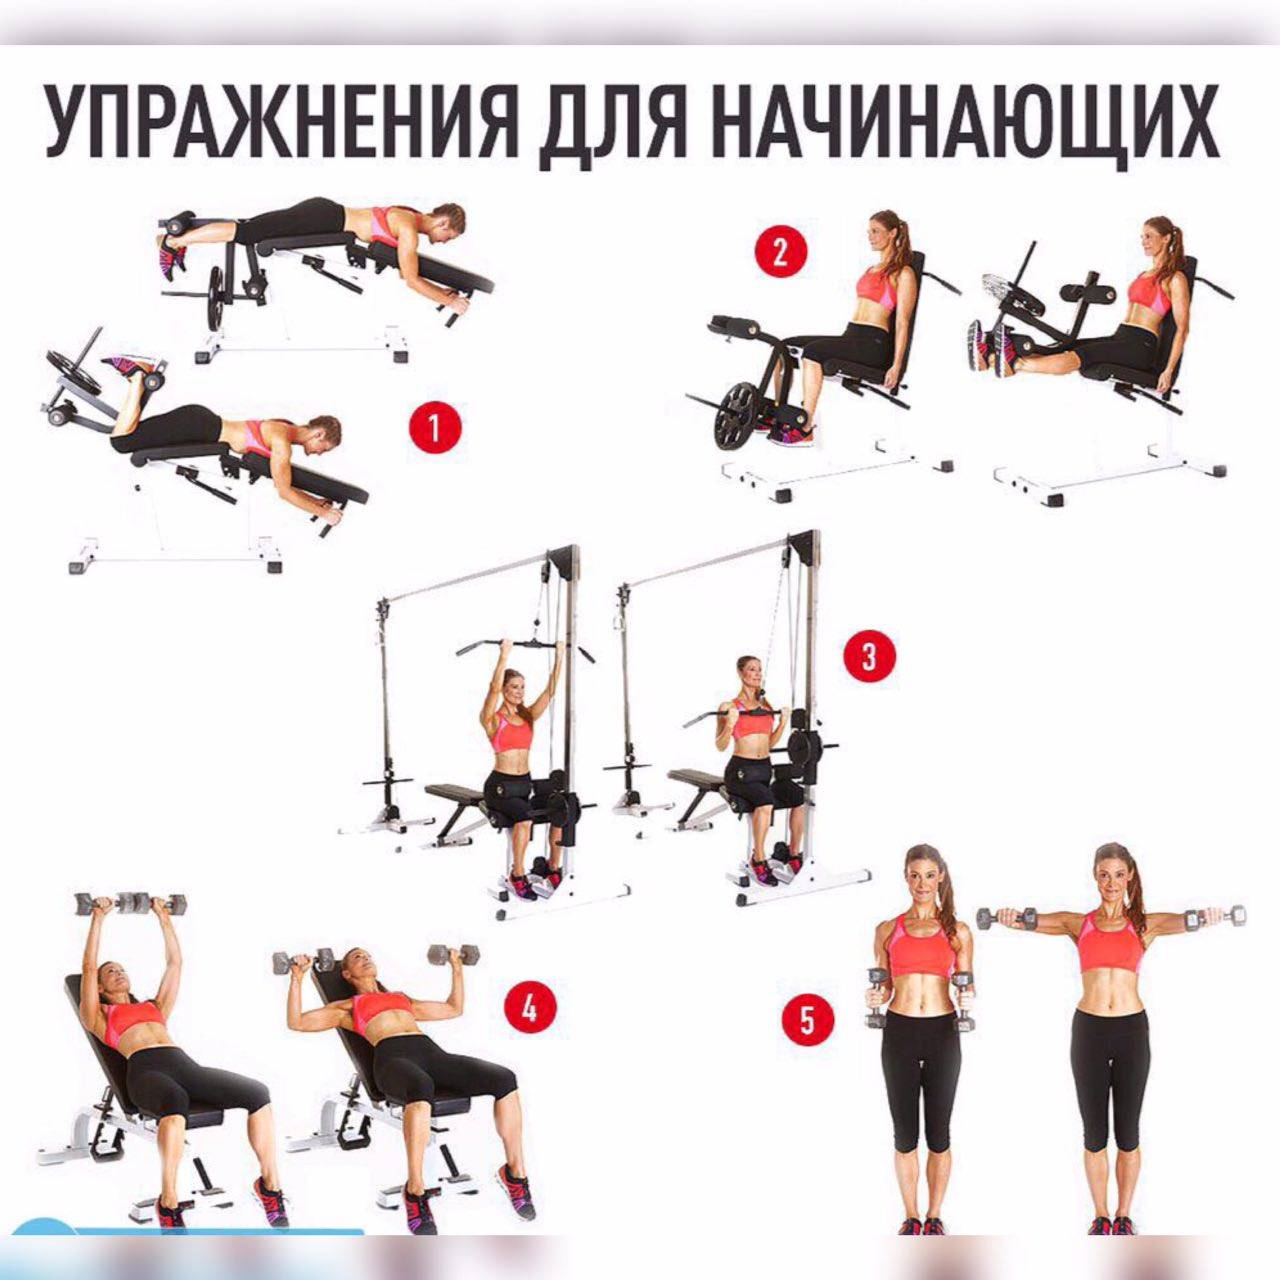 Базовые упражнения в тренажерном зале: топ 10 упражнений с фото и видео